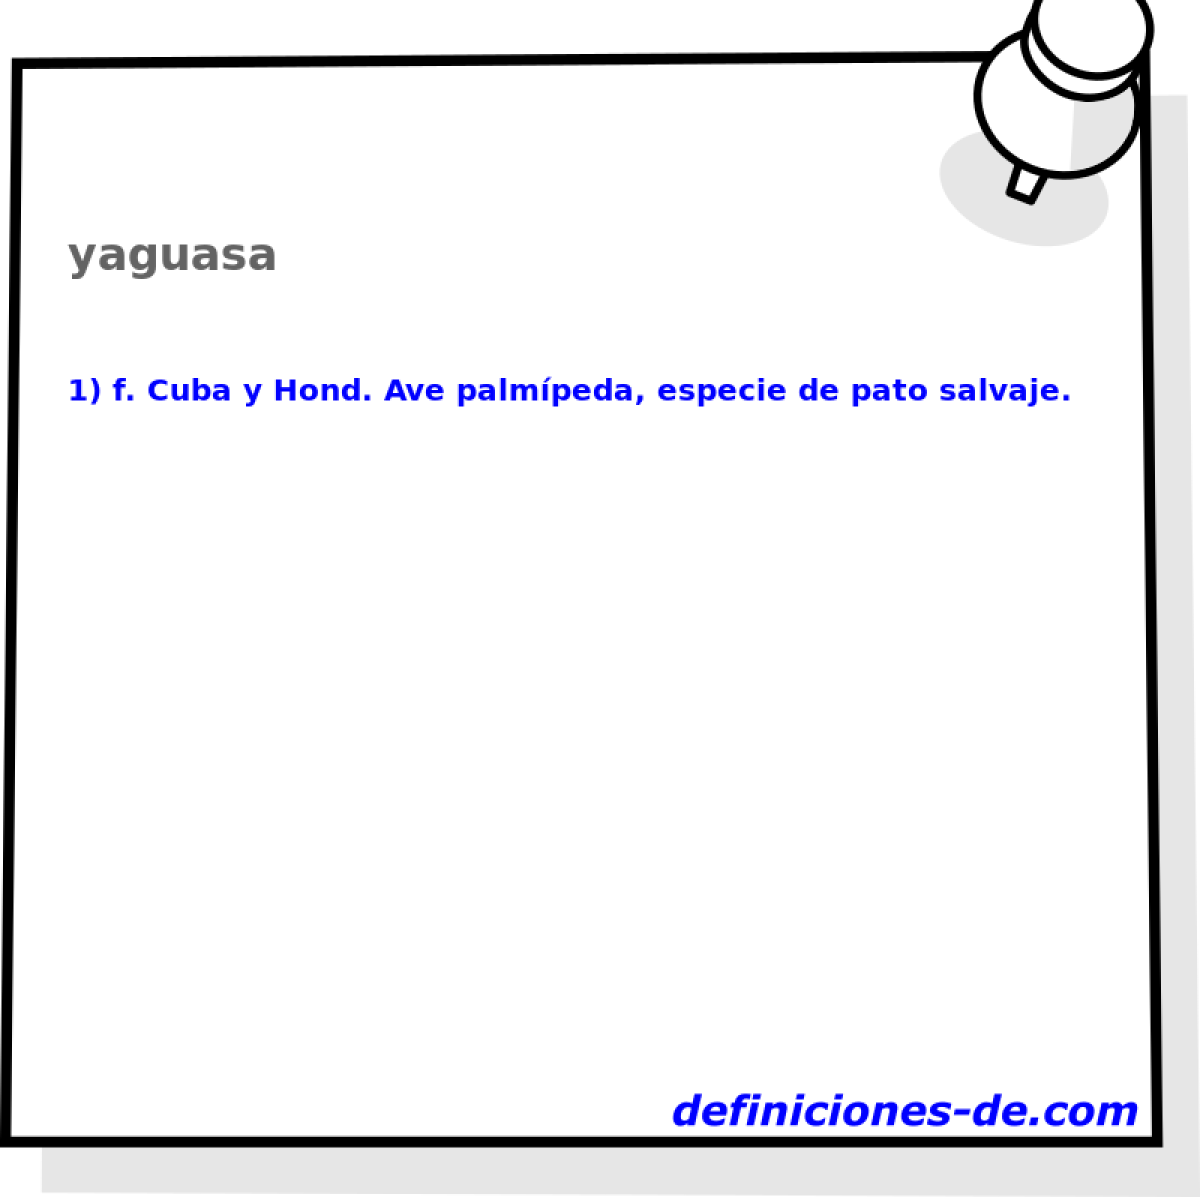 yaguasa 